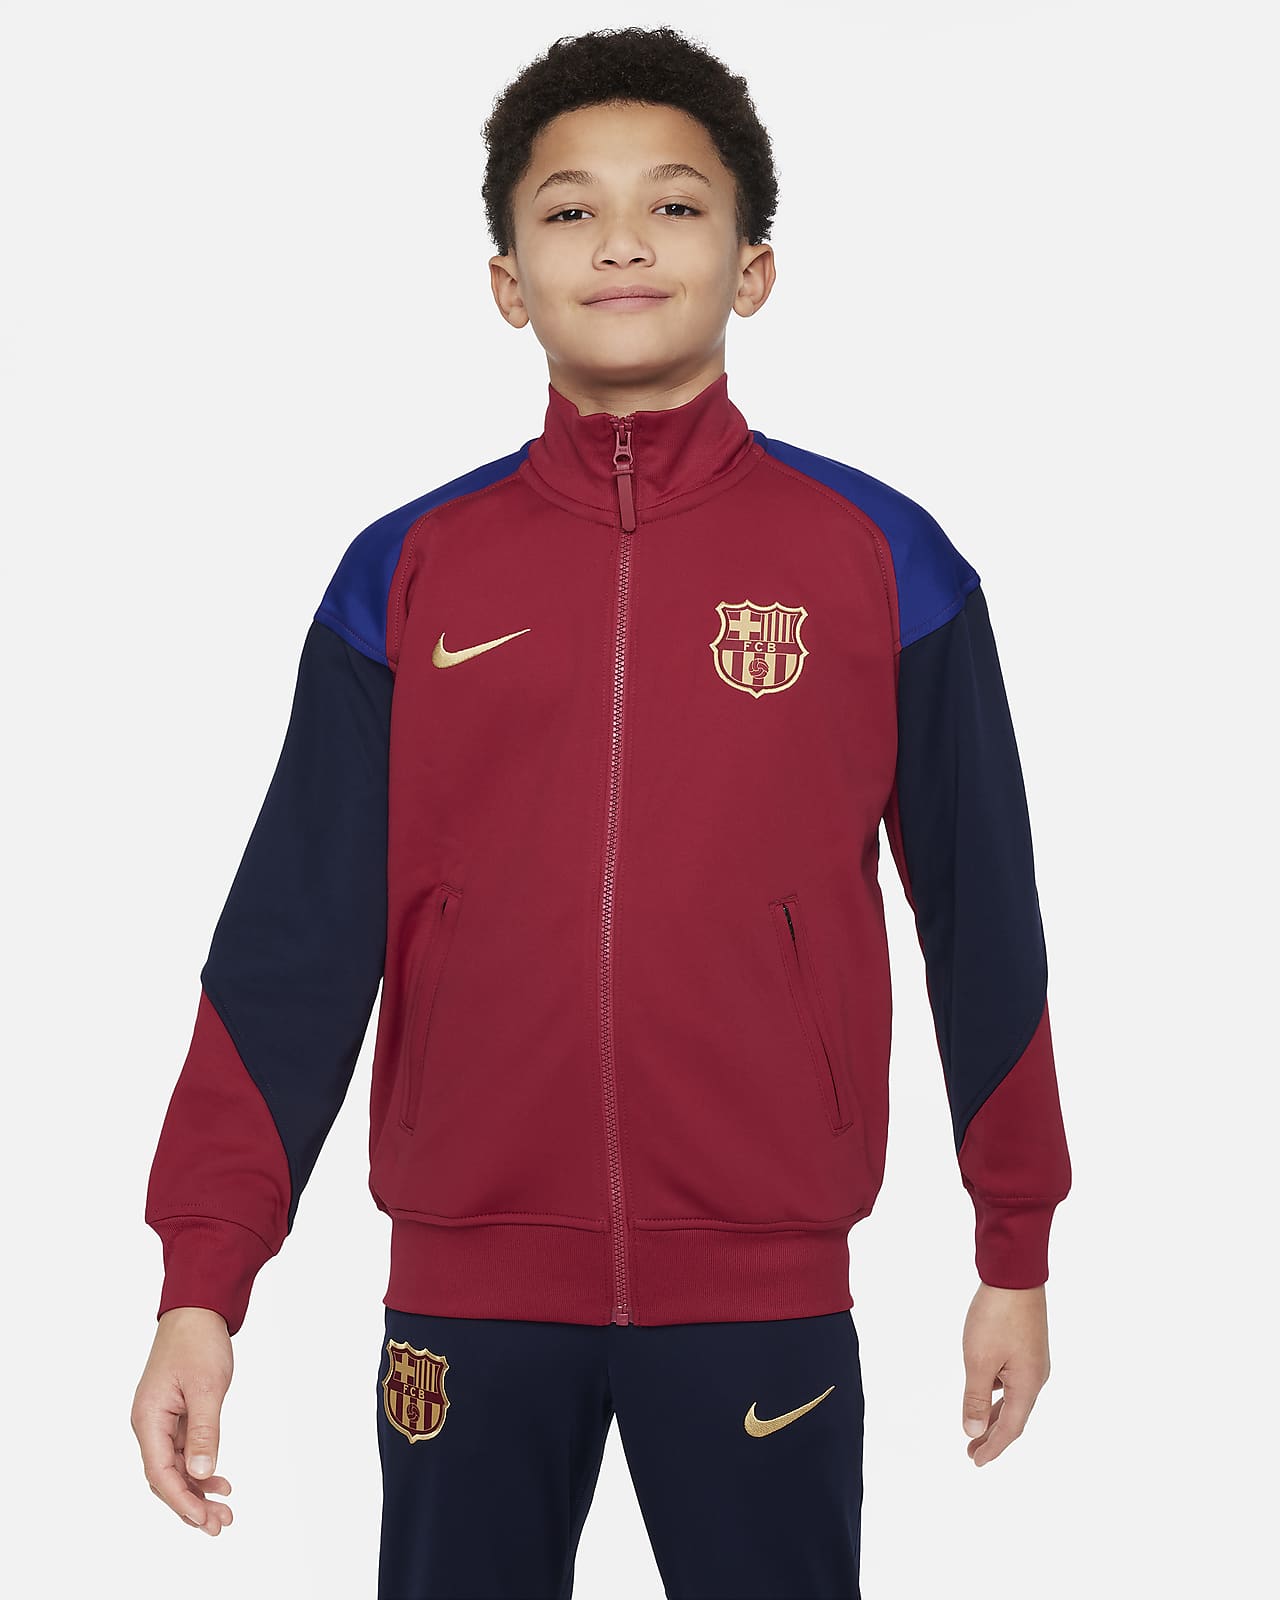 Ποδοσφαιρικό πλεκτό τζάκετ Nike Dri-FIT εναλλακτικής εμφάνισης Μπαρτσελόνα Academy Pro για μεγάλα παιδιά